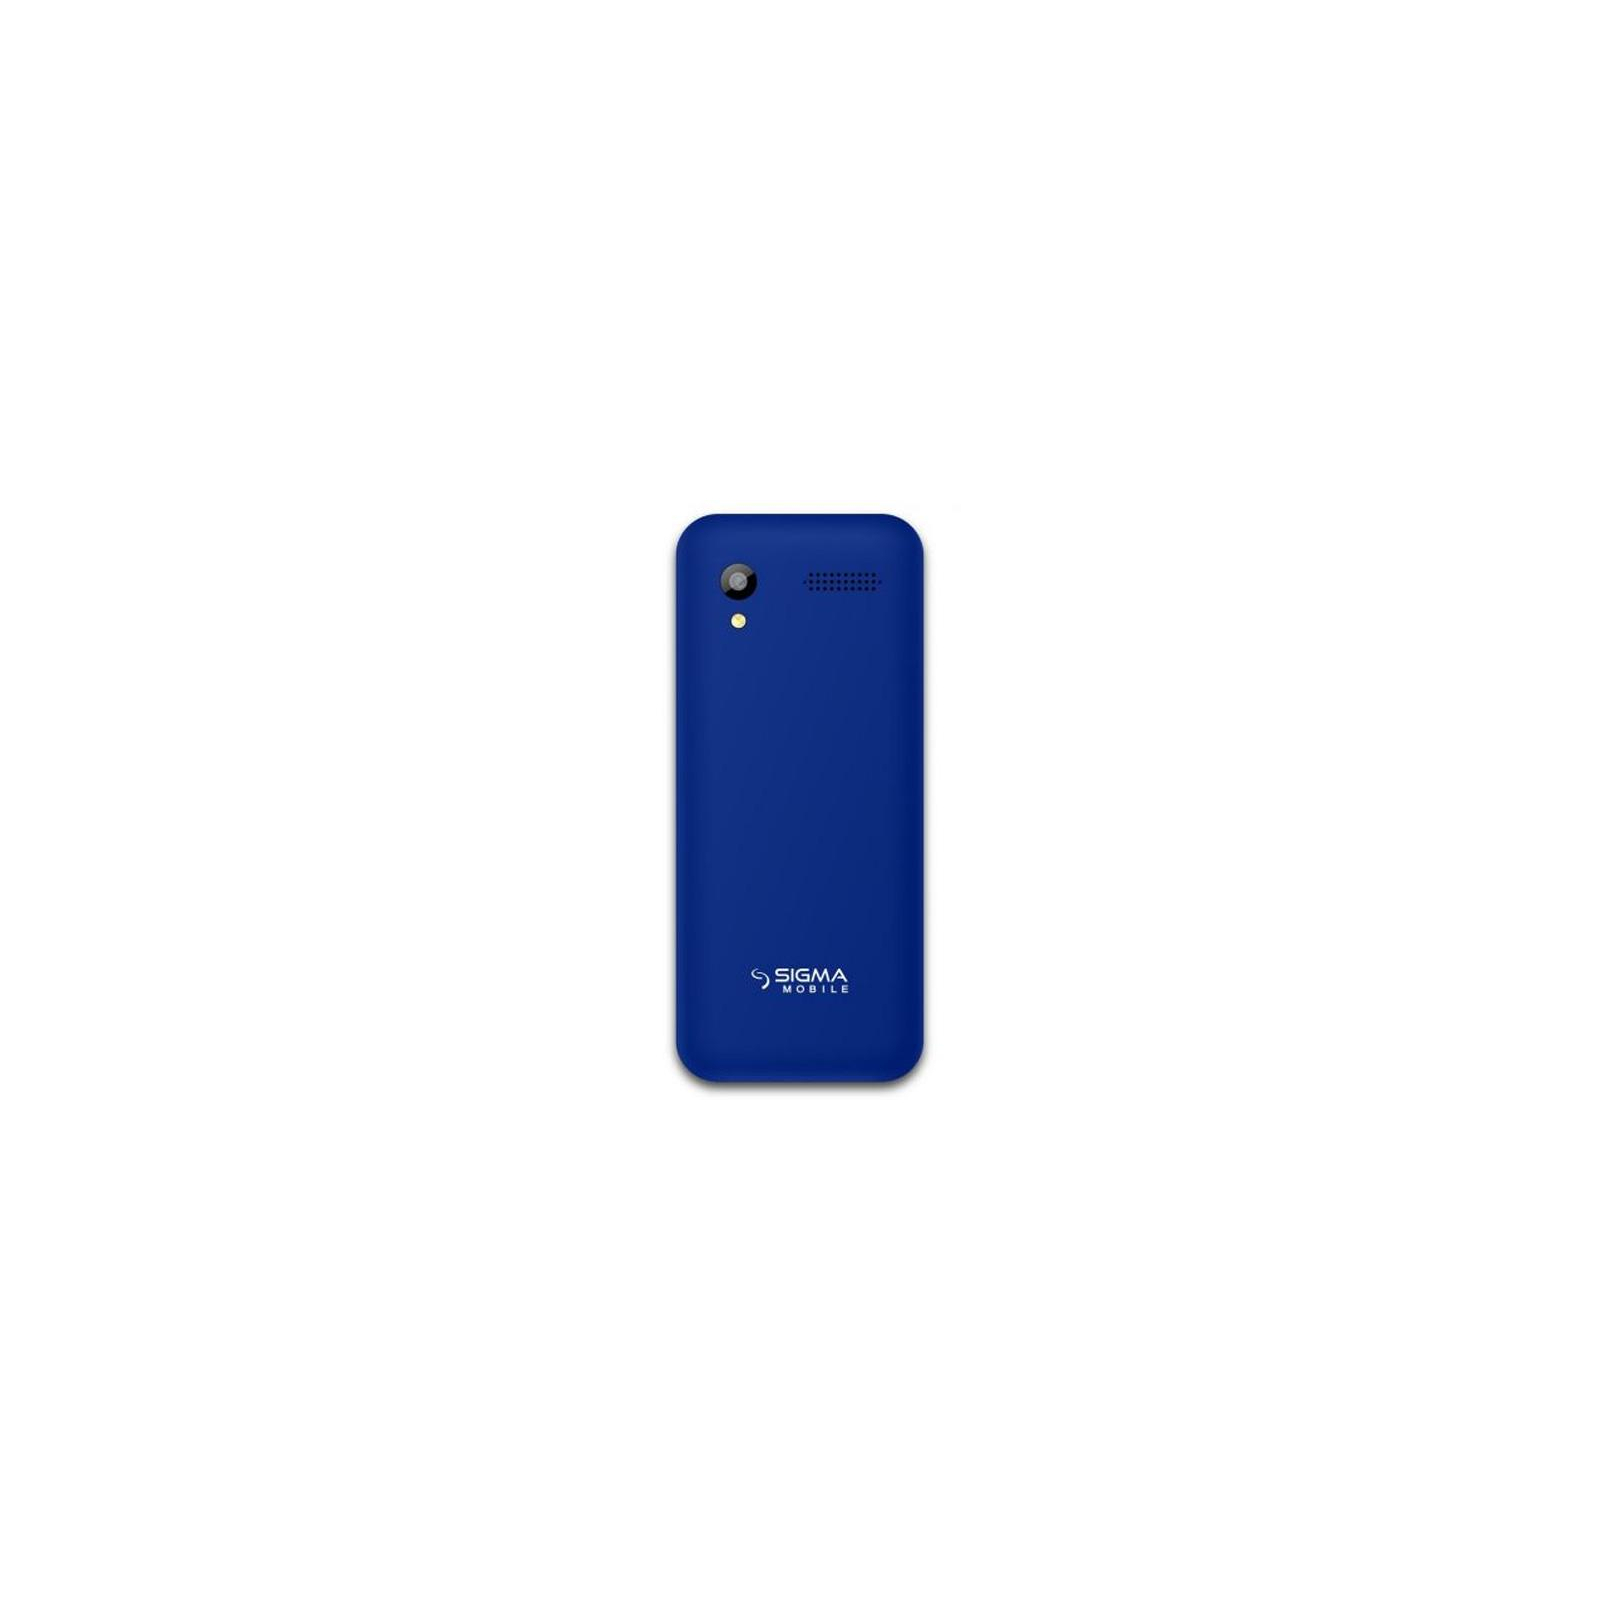 Мобильный телефон Sigma X-style 31 Power Blue (4827798854723) изображение 2